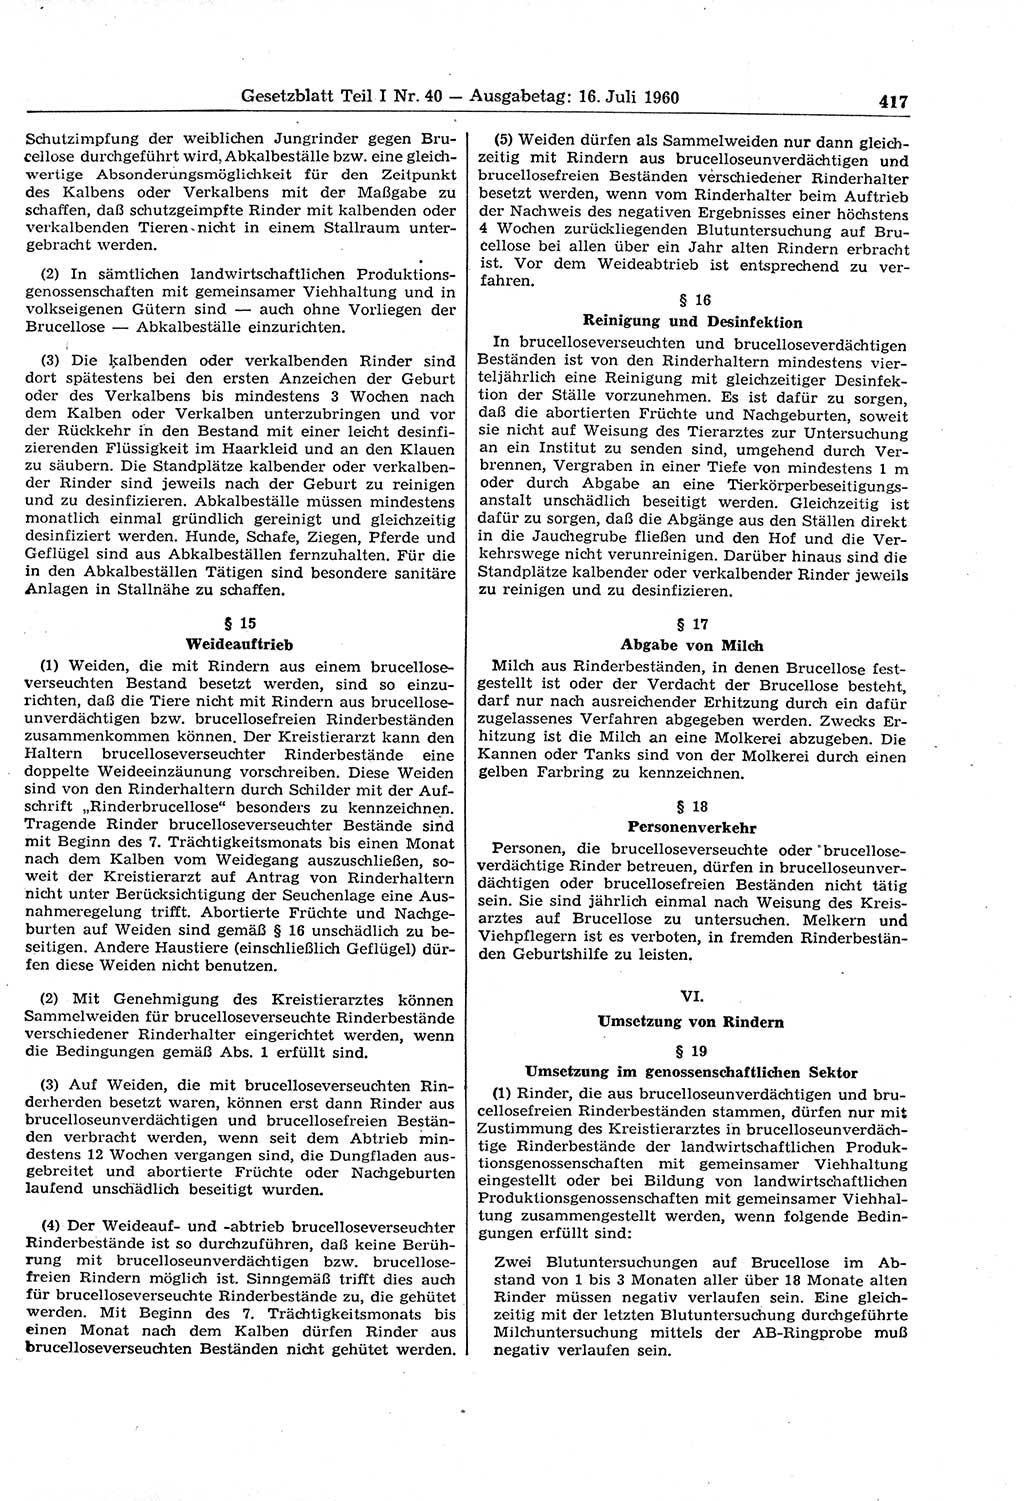 Gesetzblatt (GBl.) der Deutschen Demokratischen Republik (DDR) Teil Ⅰ 1960, Seite 417 (GBl. DDR Ⅰ 1960, S. 417)